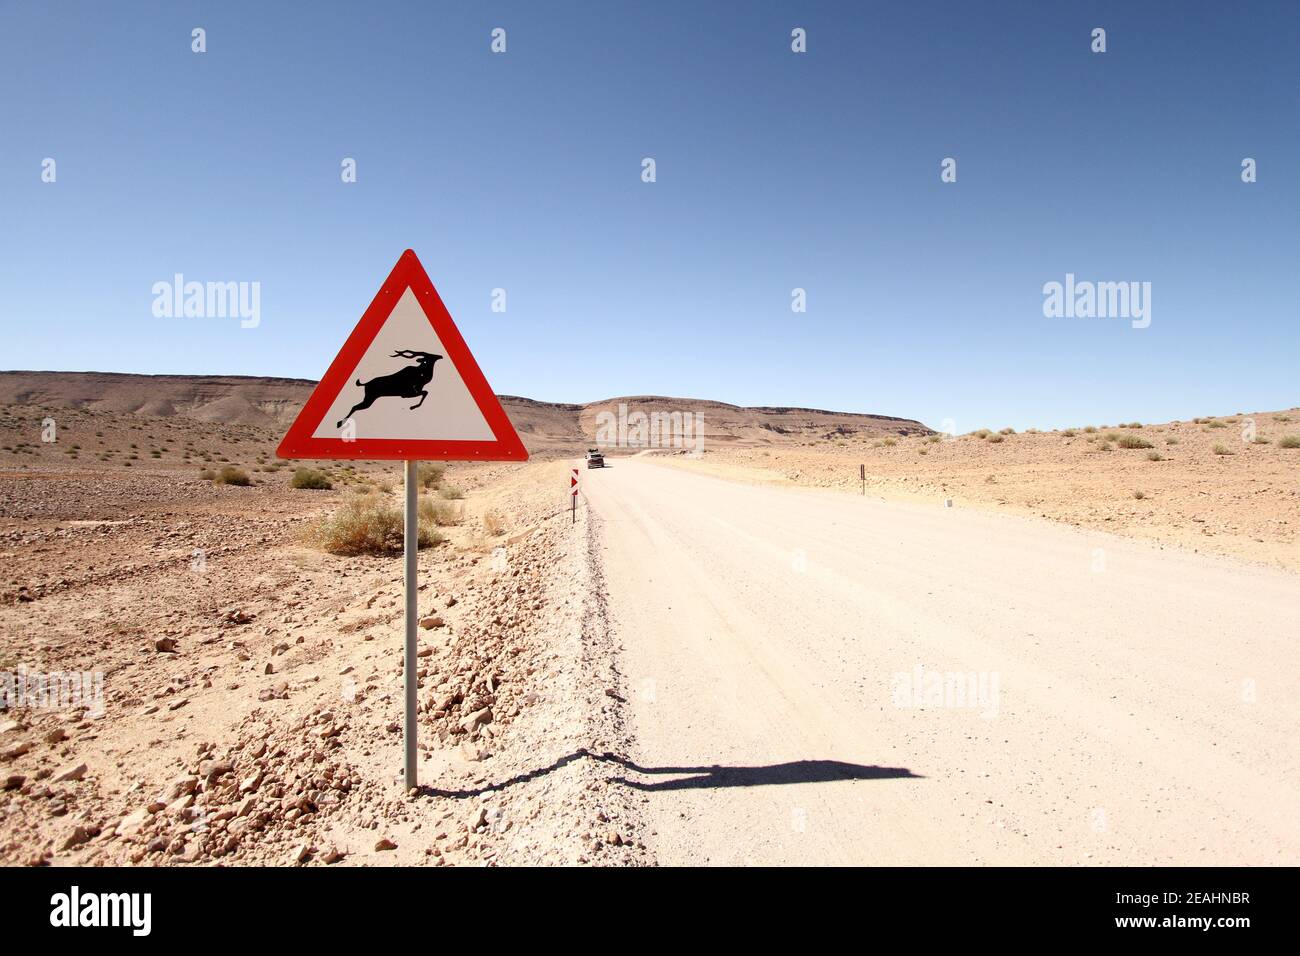 Un panneau de mise en garde antilope sur une route désertique poussiéreuse Banque D'Images